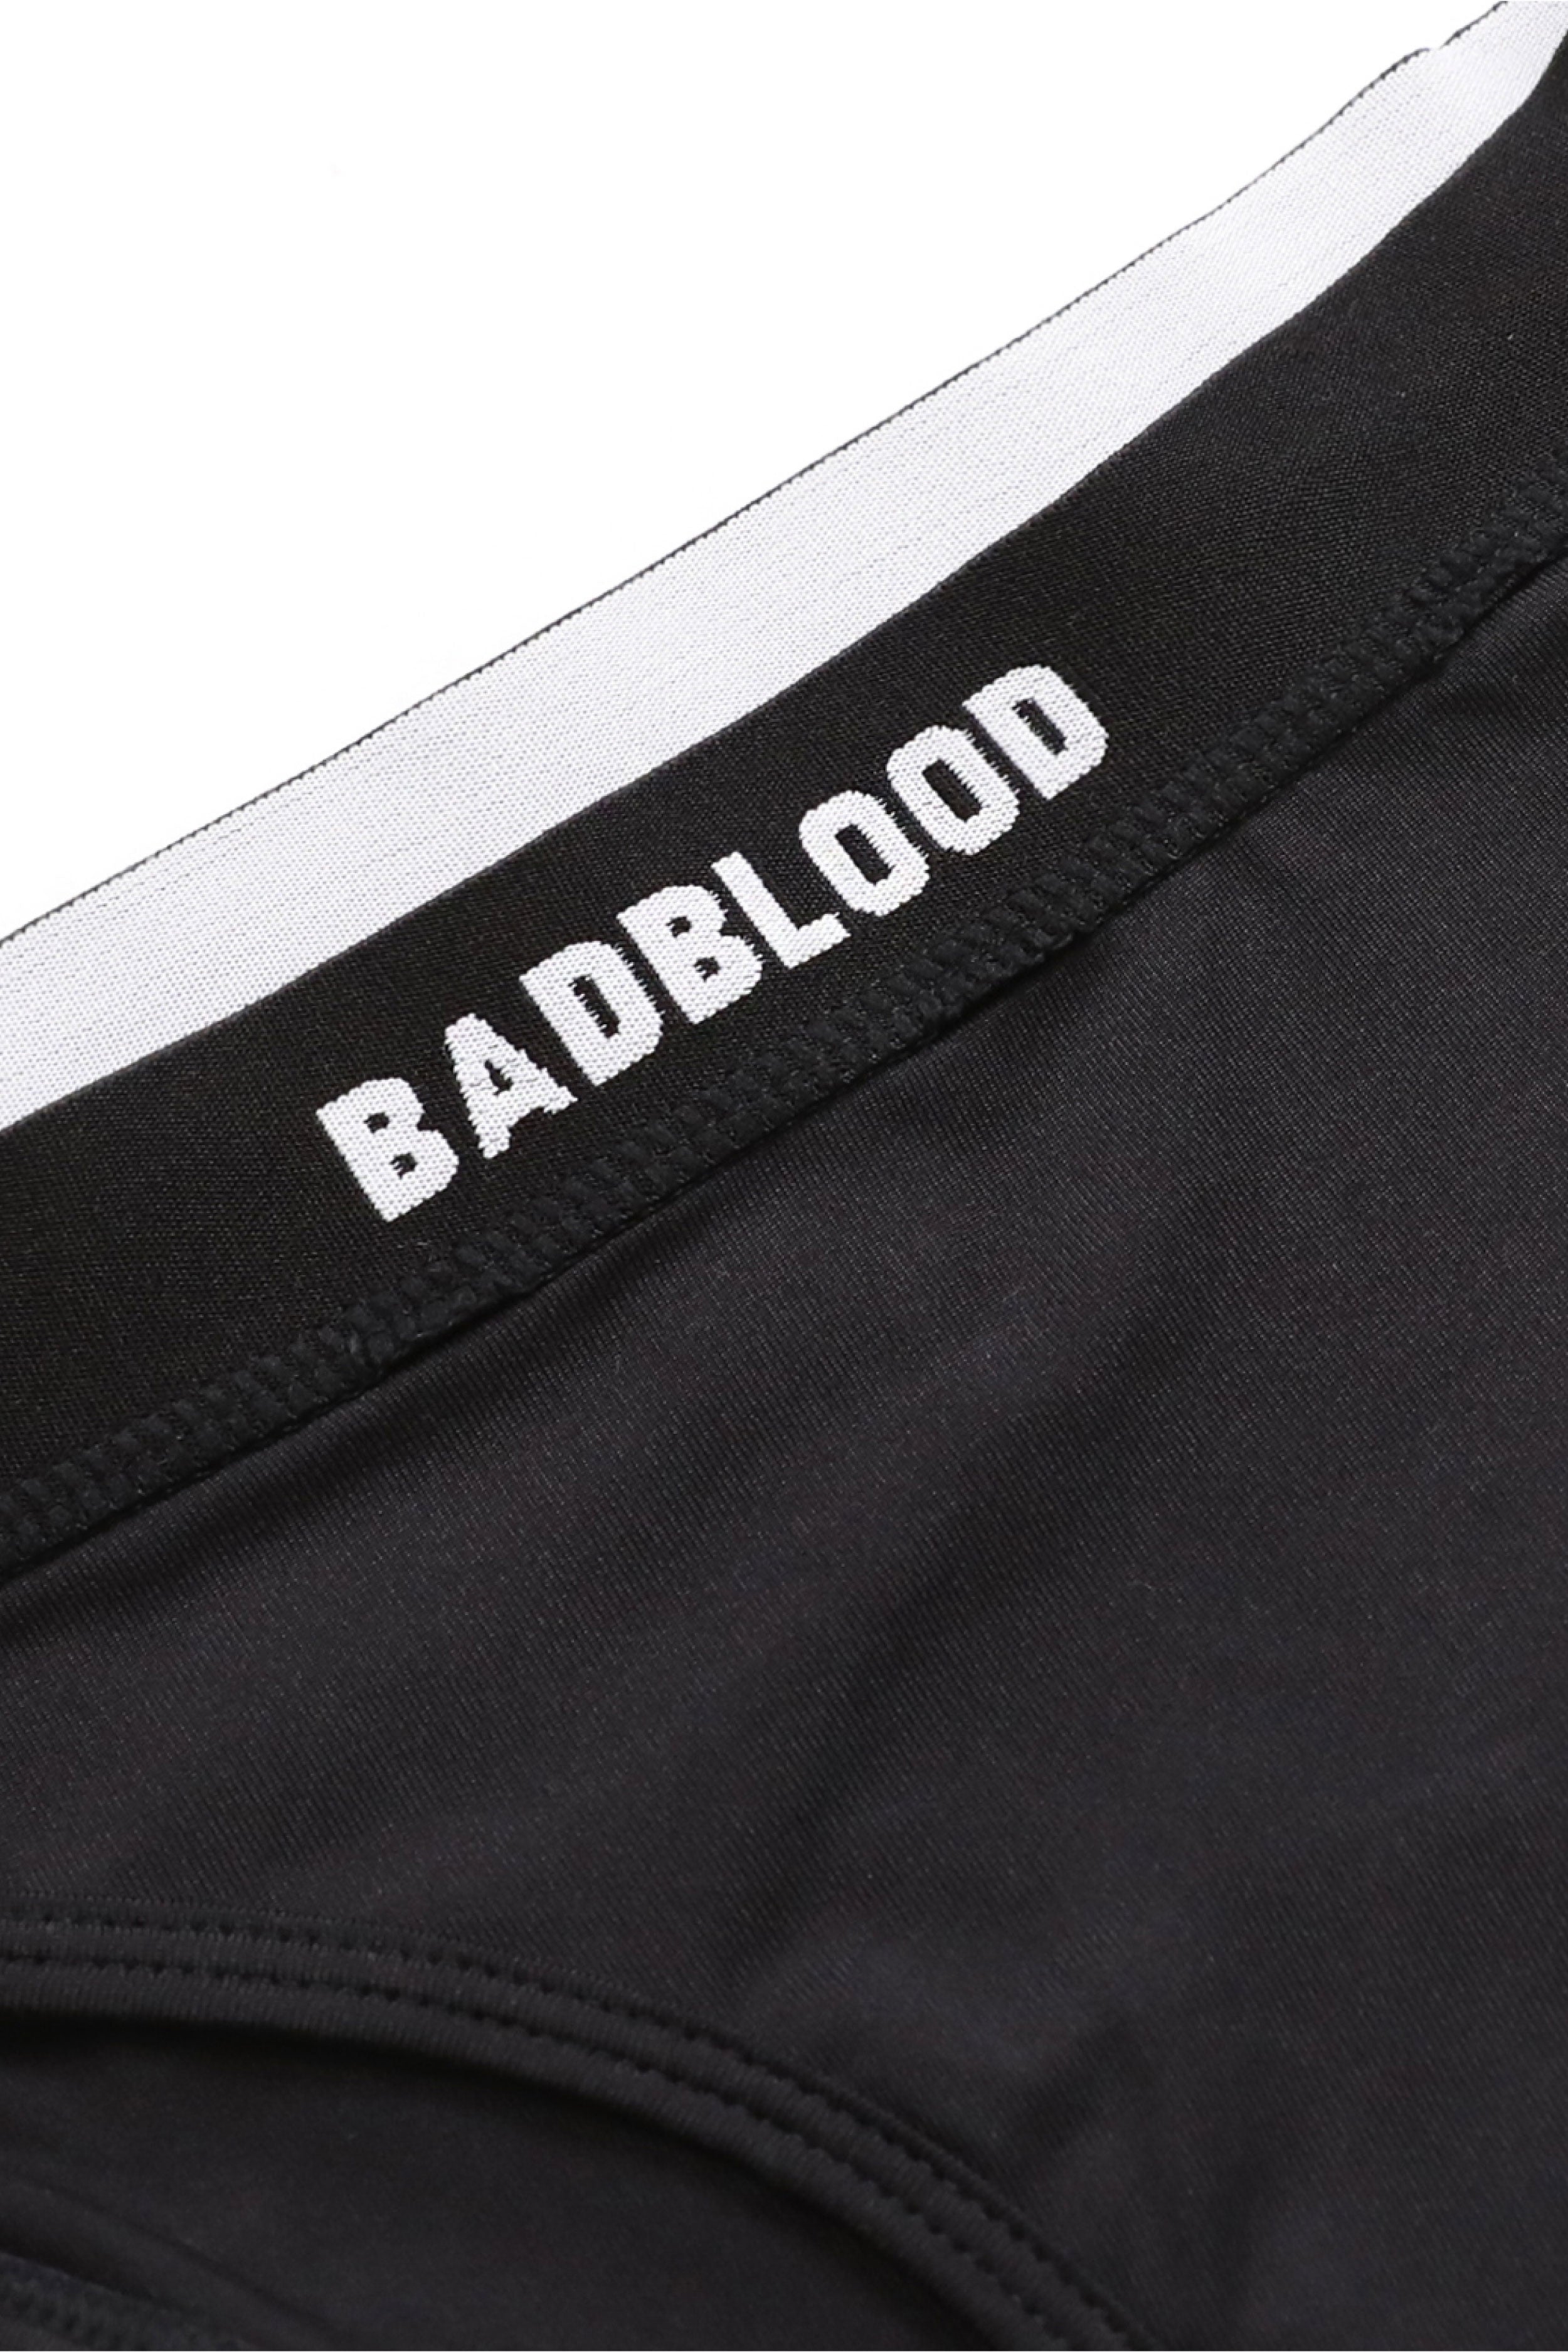 Badblood 小號標誌內褲 黑色